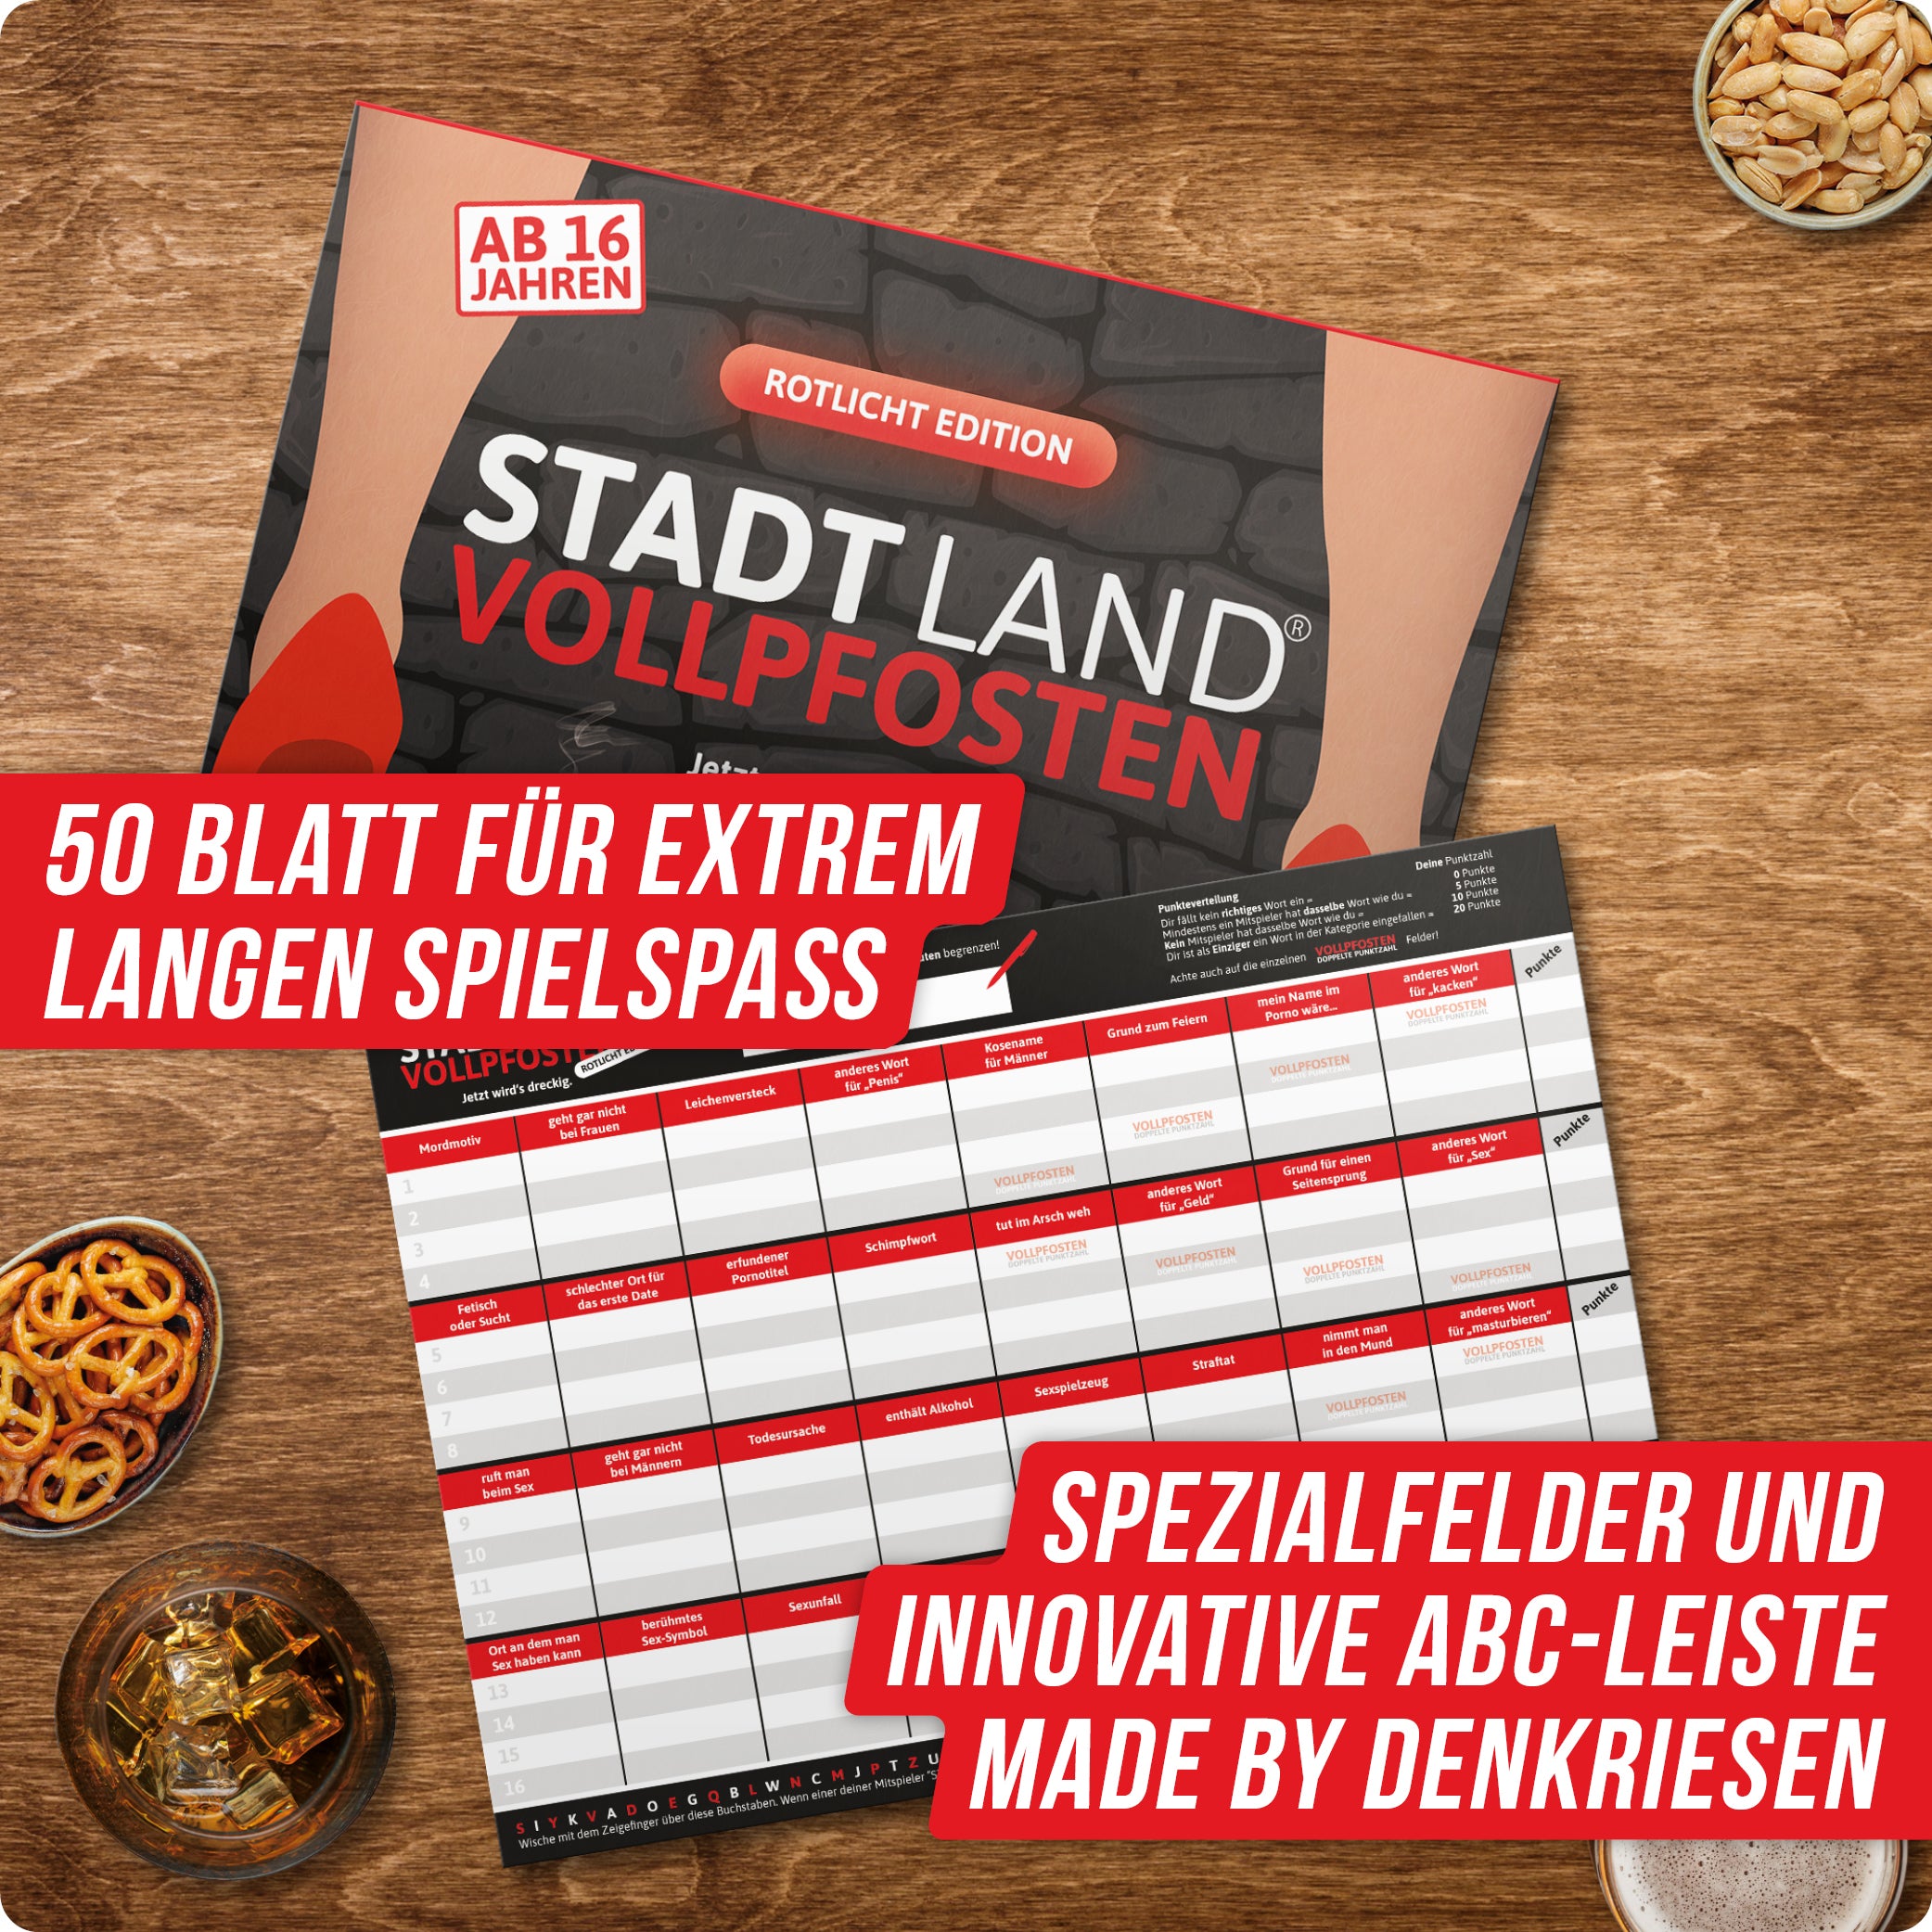 Stadt Land Vollpfosten® Rotlicht Edition – "Jetzt wird's dreckig." | A4 Spielblock